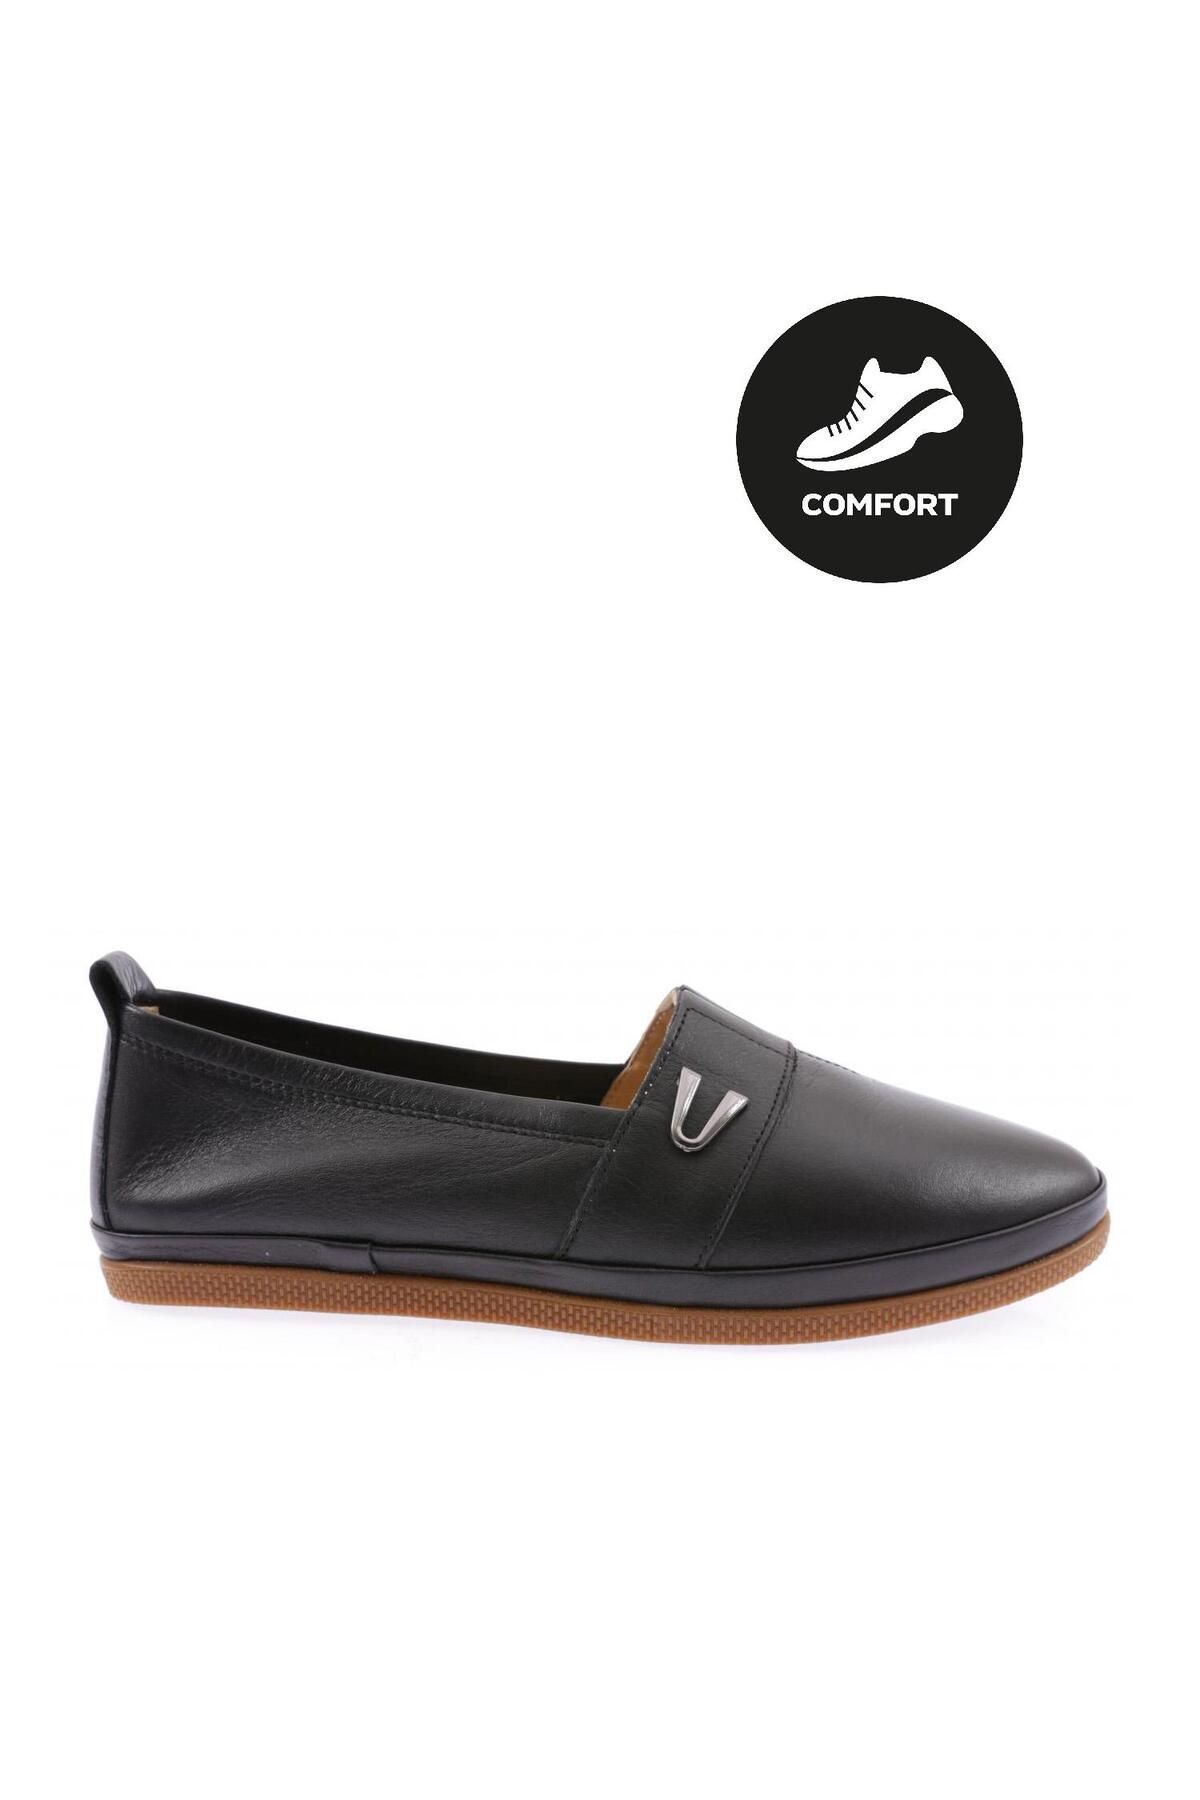 Dgn 22003-22y Kadın Yanı Tokalı Comfort Ayakkabı Siyah Hakiki Deri